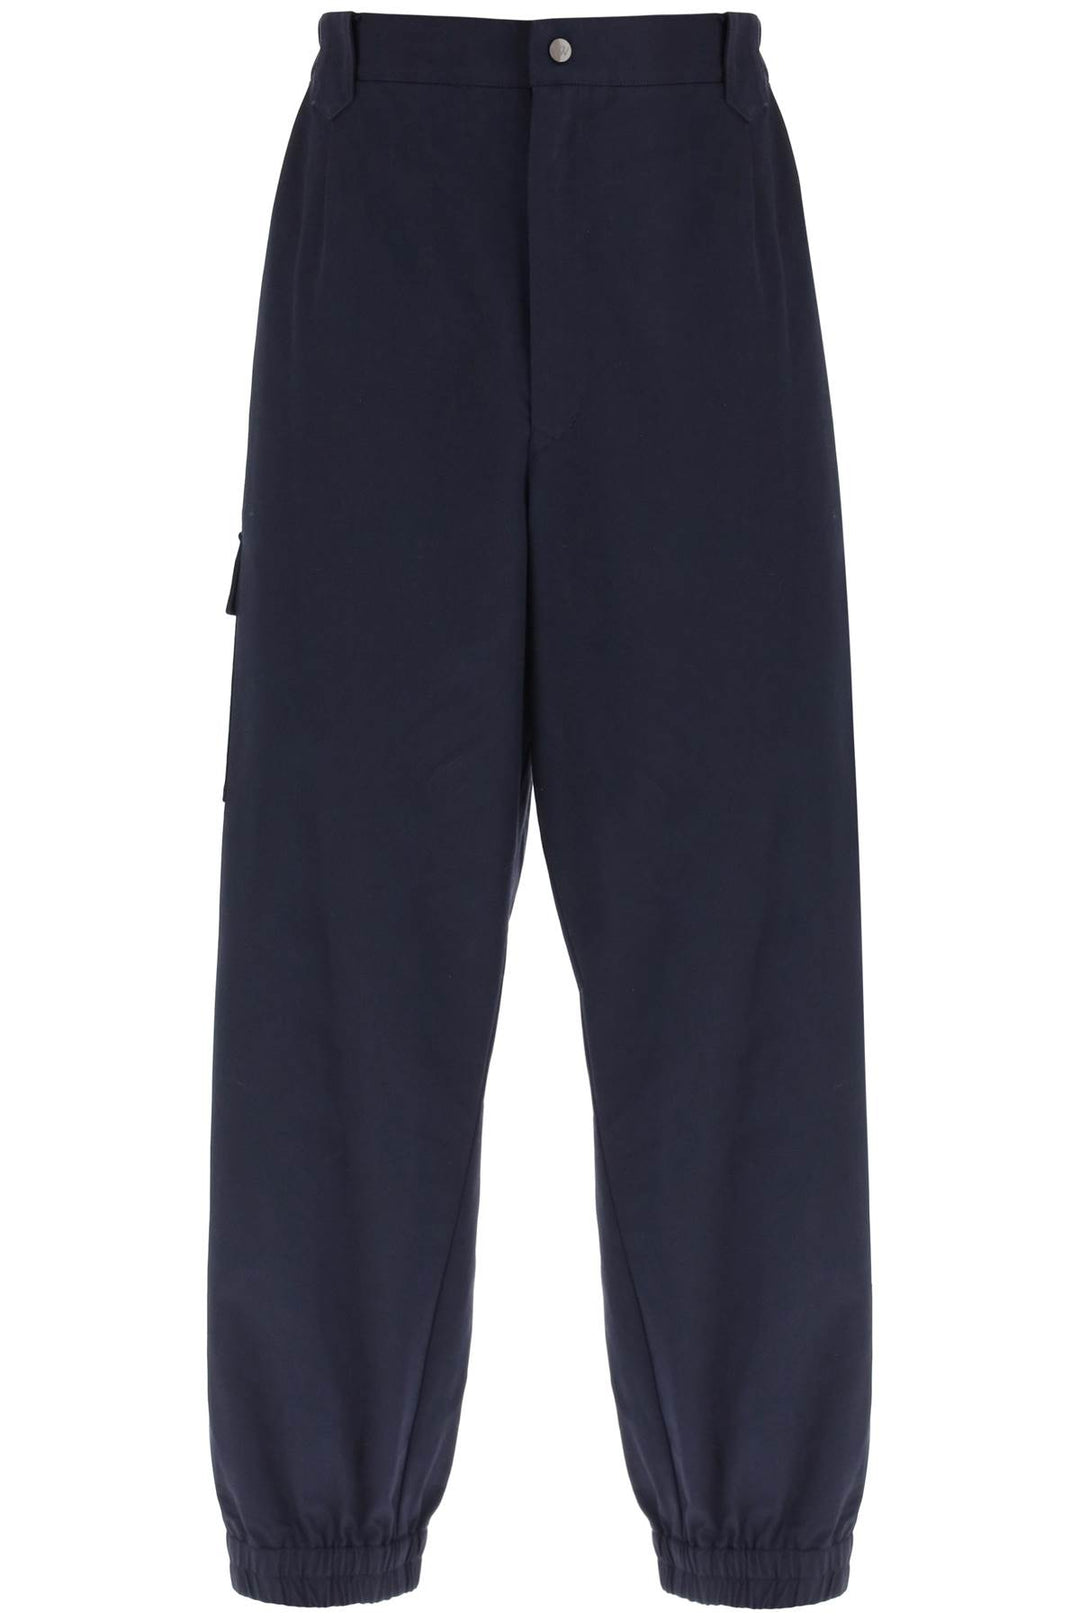 Vivienne Westwood Cotton Combat Pants   Blu